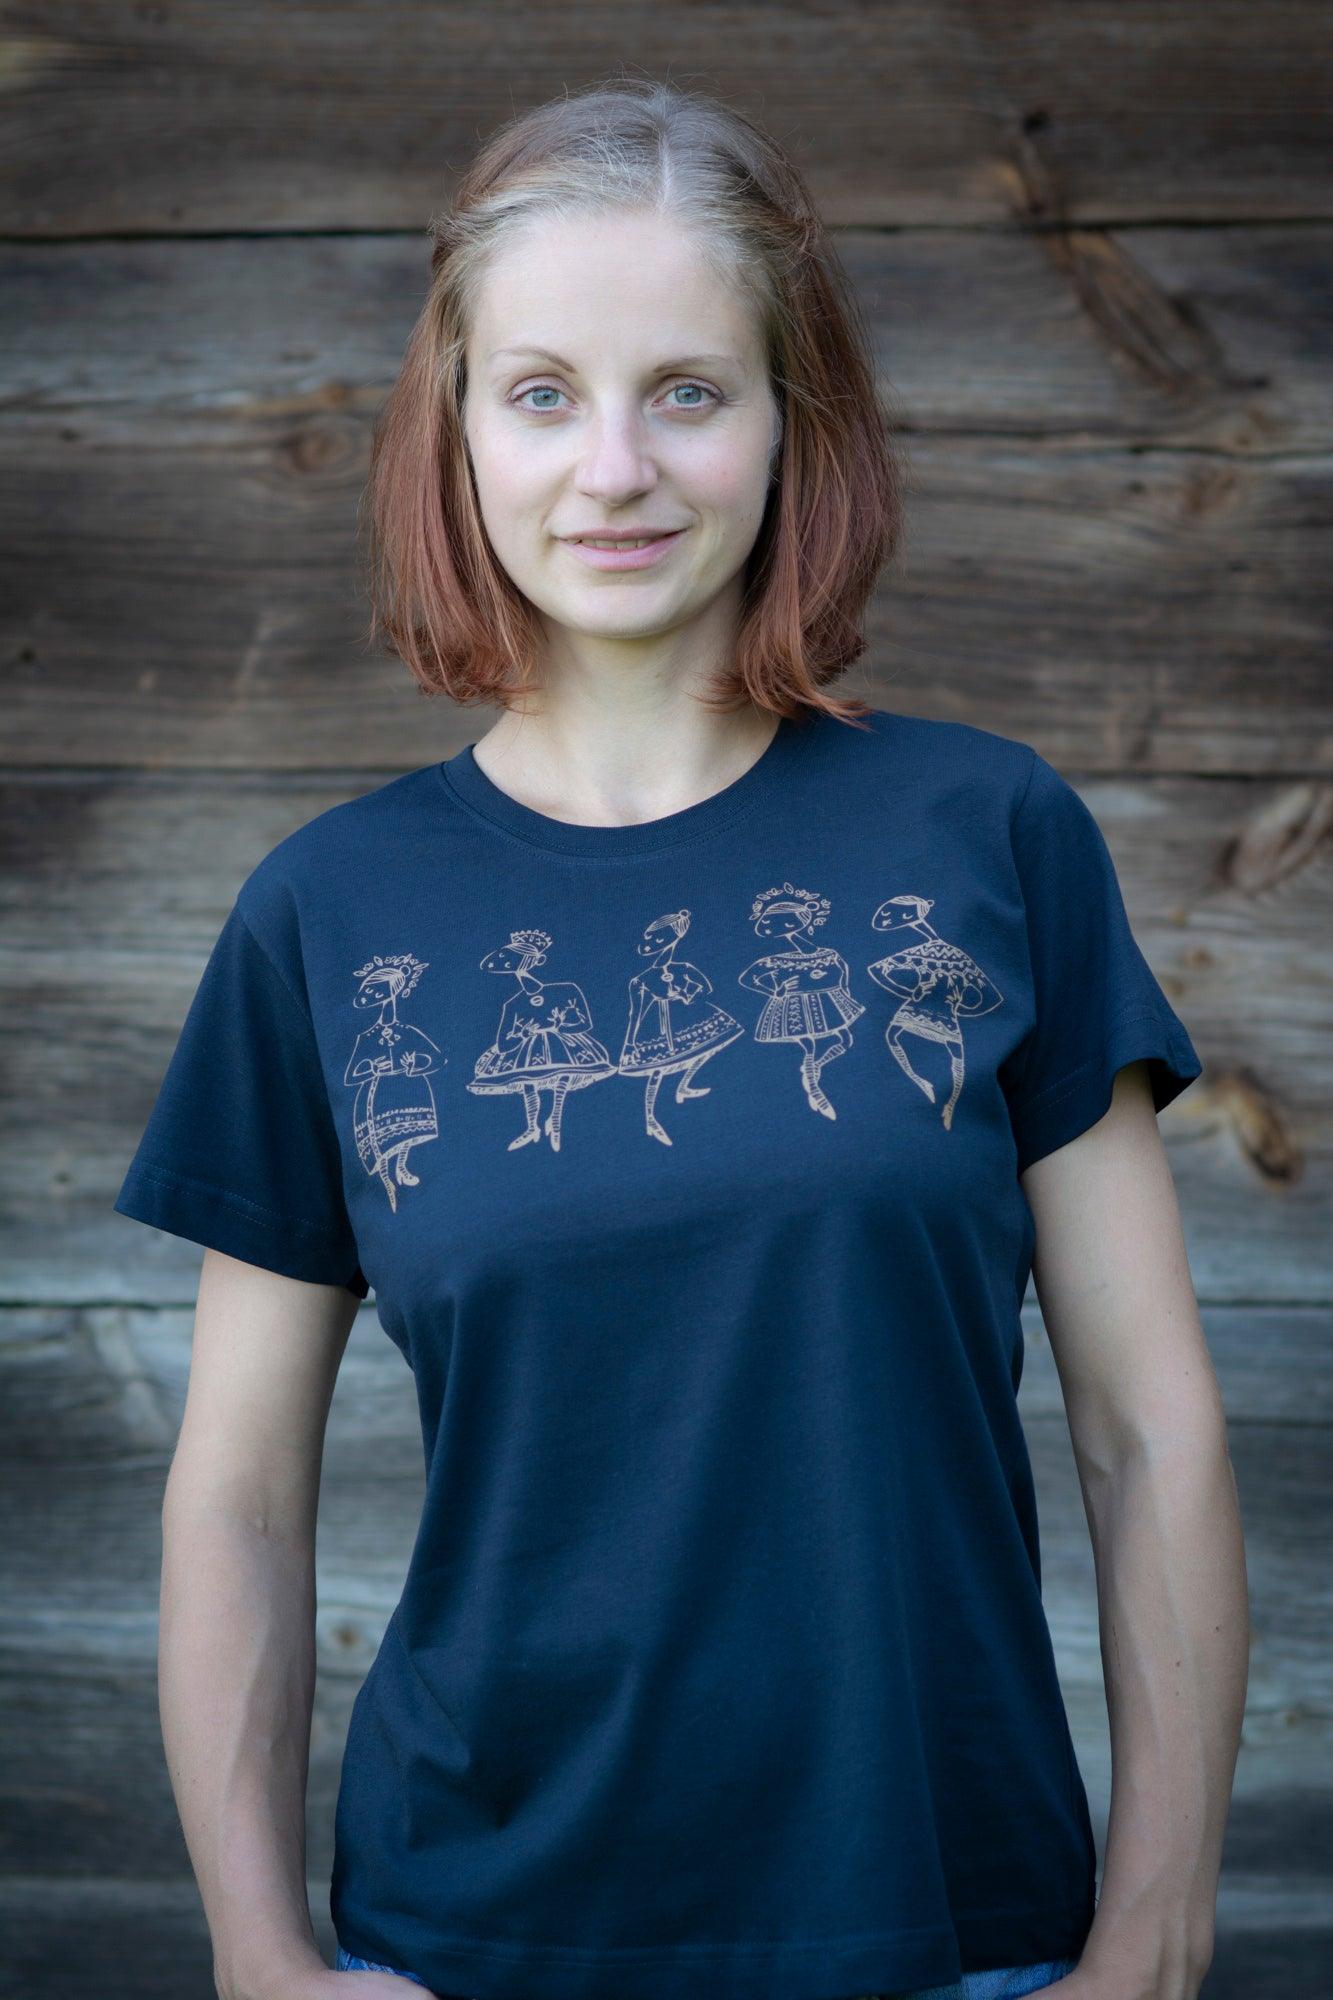 Meitene stāv pie koka mājas sienas. Mugurā tai tumši zils T-krekls uz kura sietspiedes tehnikā uzdrukātas piecas tautu meitenes bronzaskrāsā